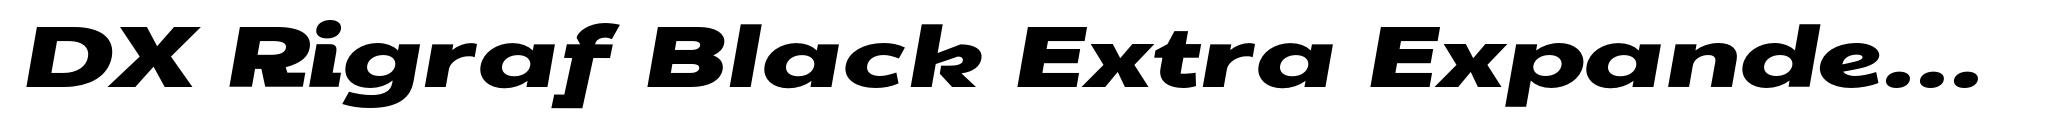 DX Rigraf Black Extra Expanded Italic image